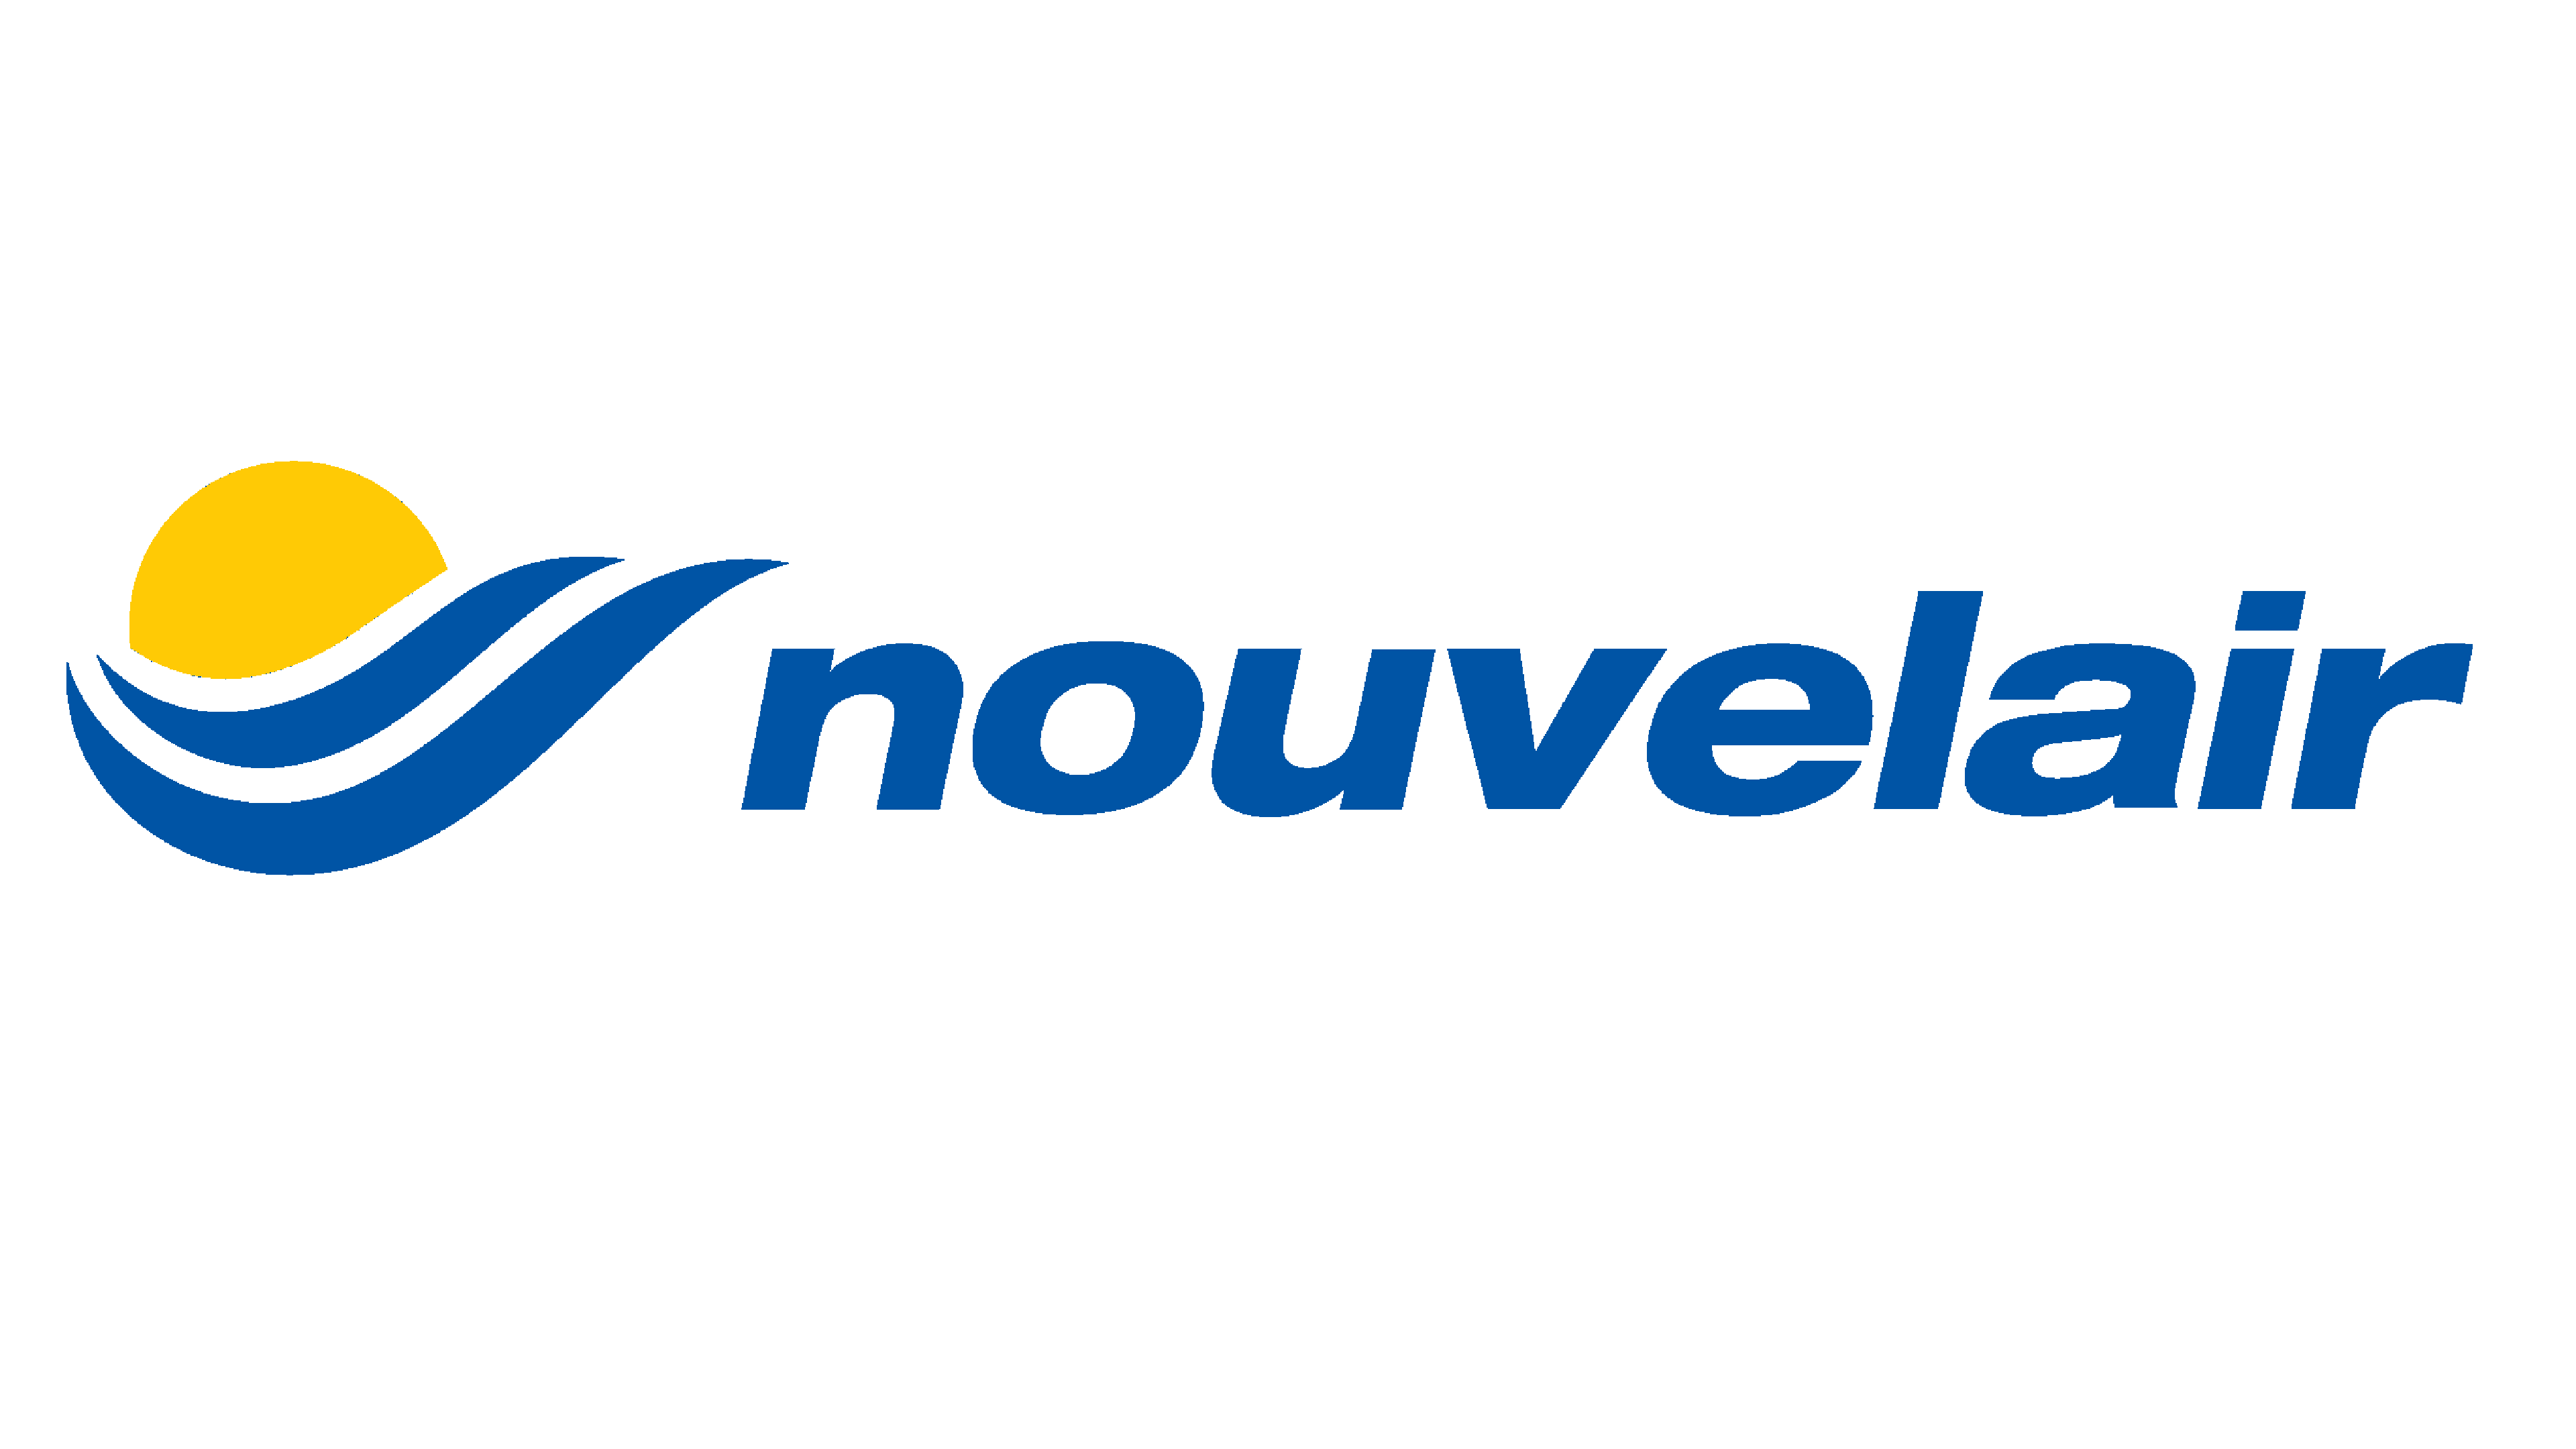 Nouvelair tunisie (тунисские авиалинии) официальный сайт авиакомпании